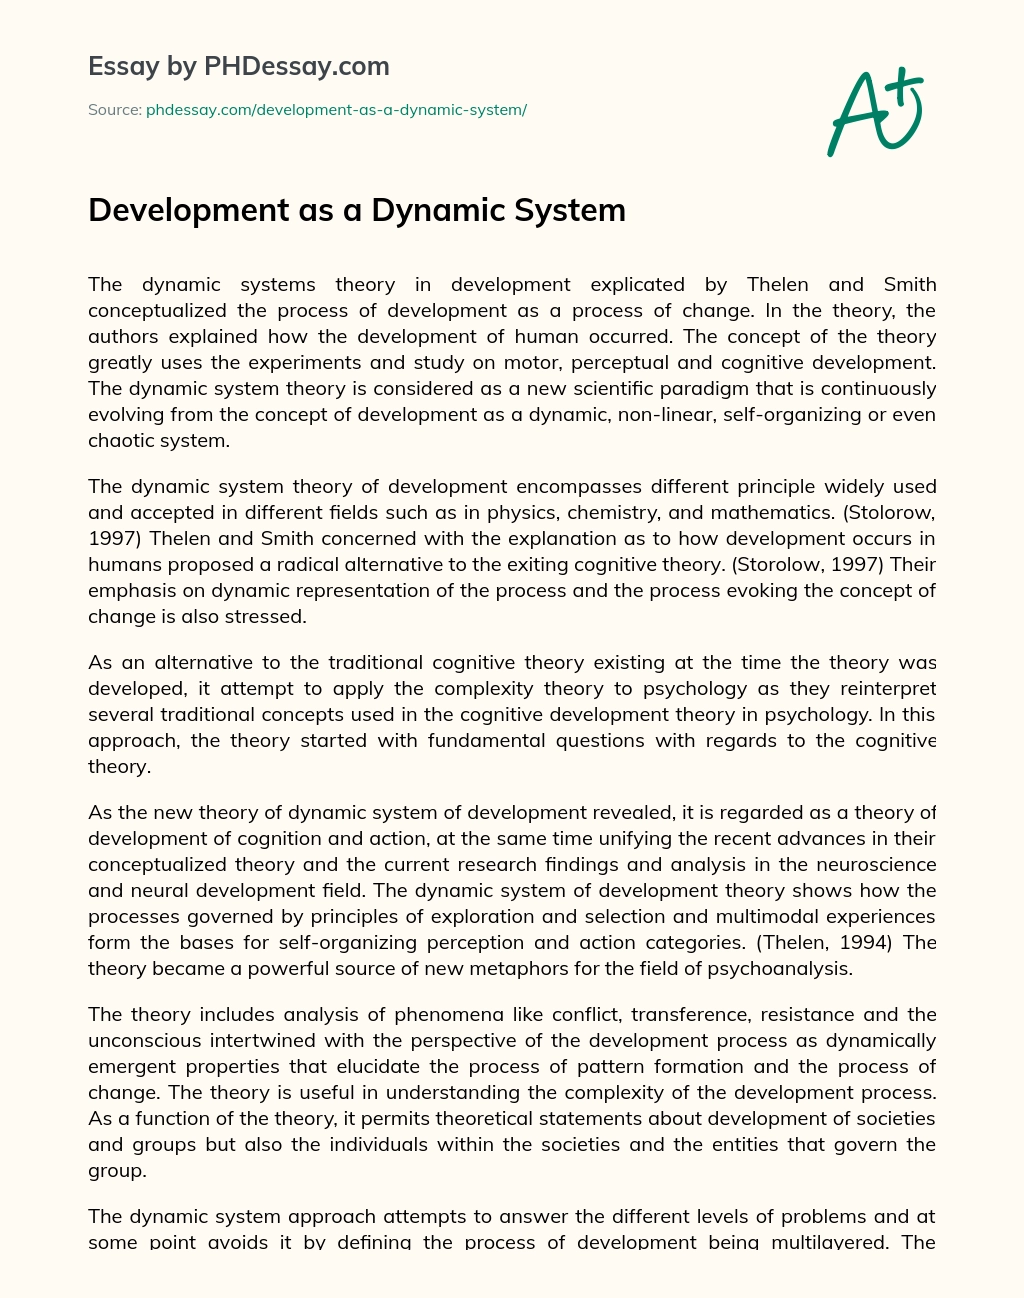 Development as a Dynamic System essay